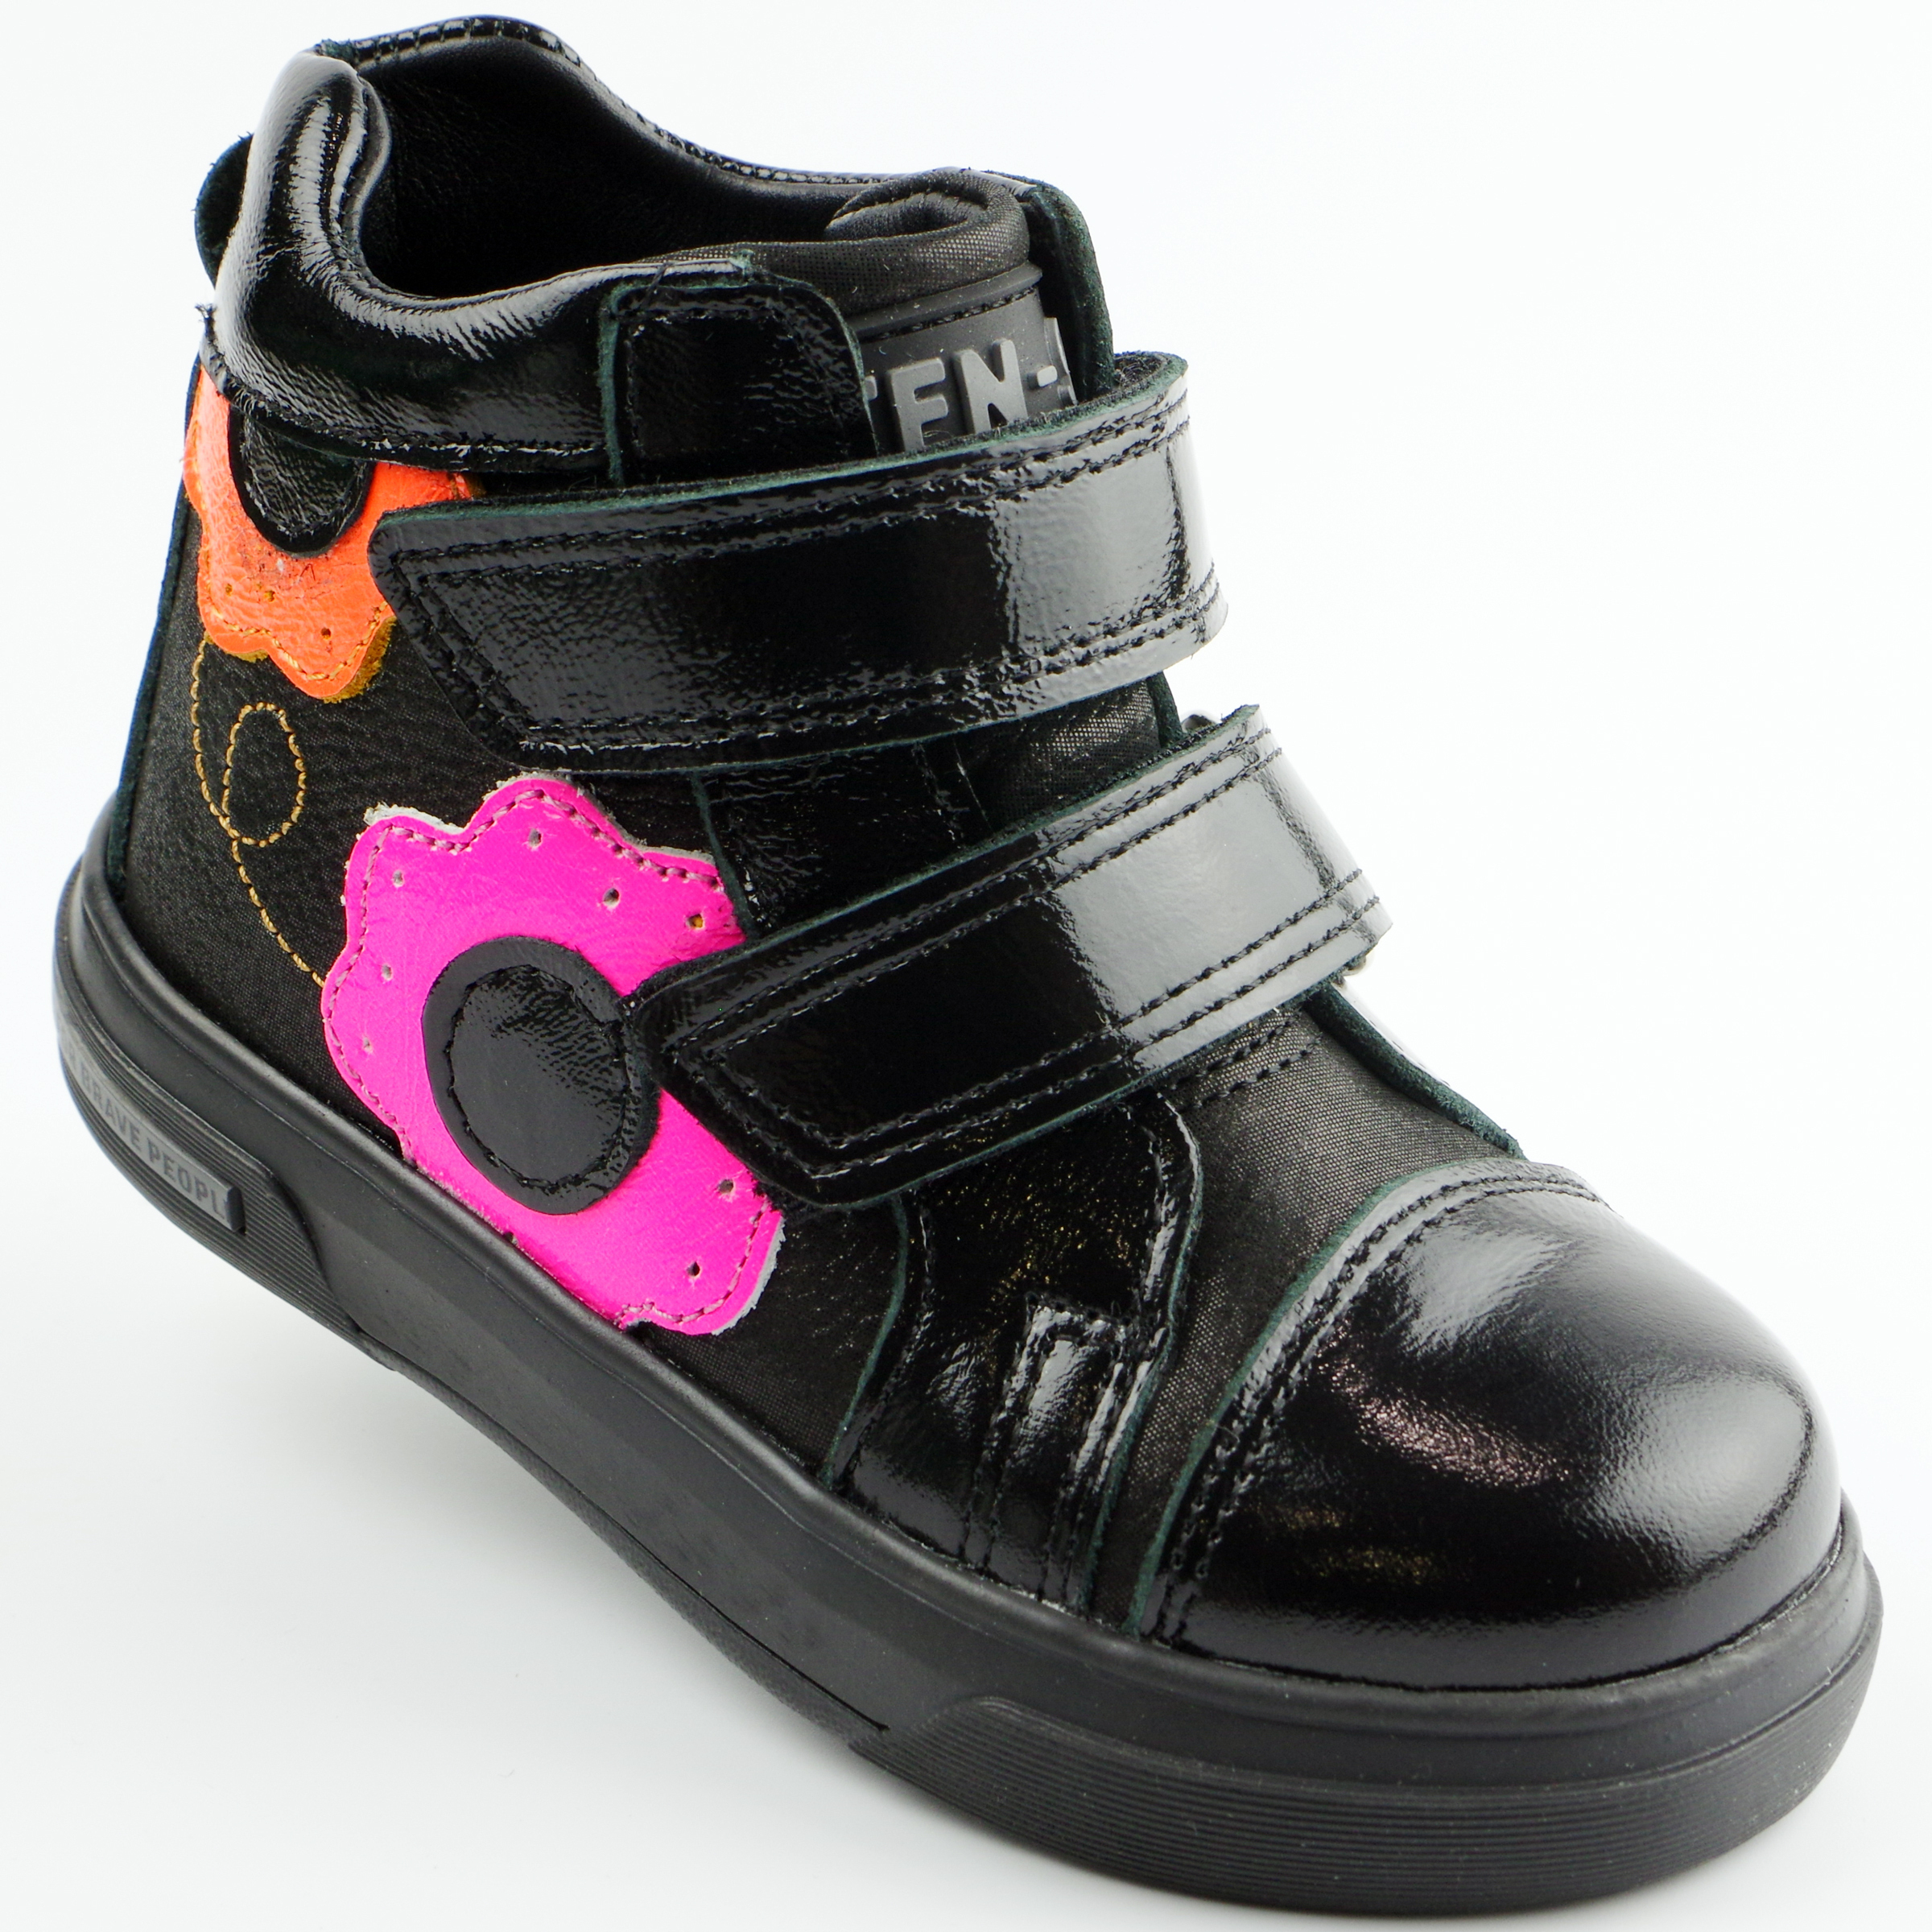 Демисезонные ботинки детские (2137) материал Натуральная кожа, цвет Черный  для девочки 21-25 размеры – Sole Kids